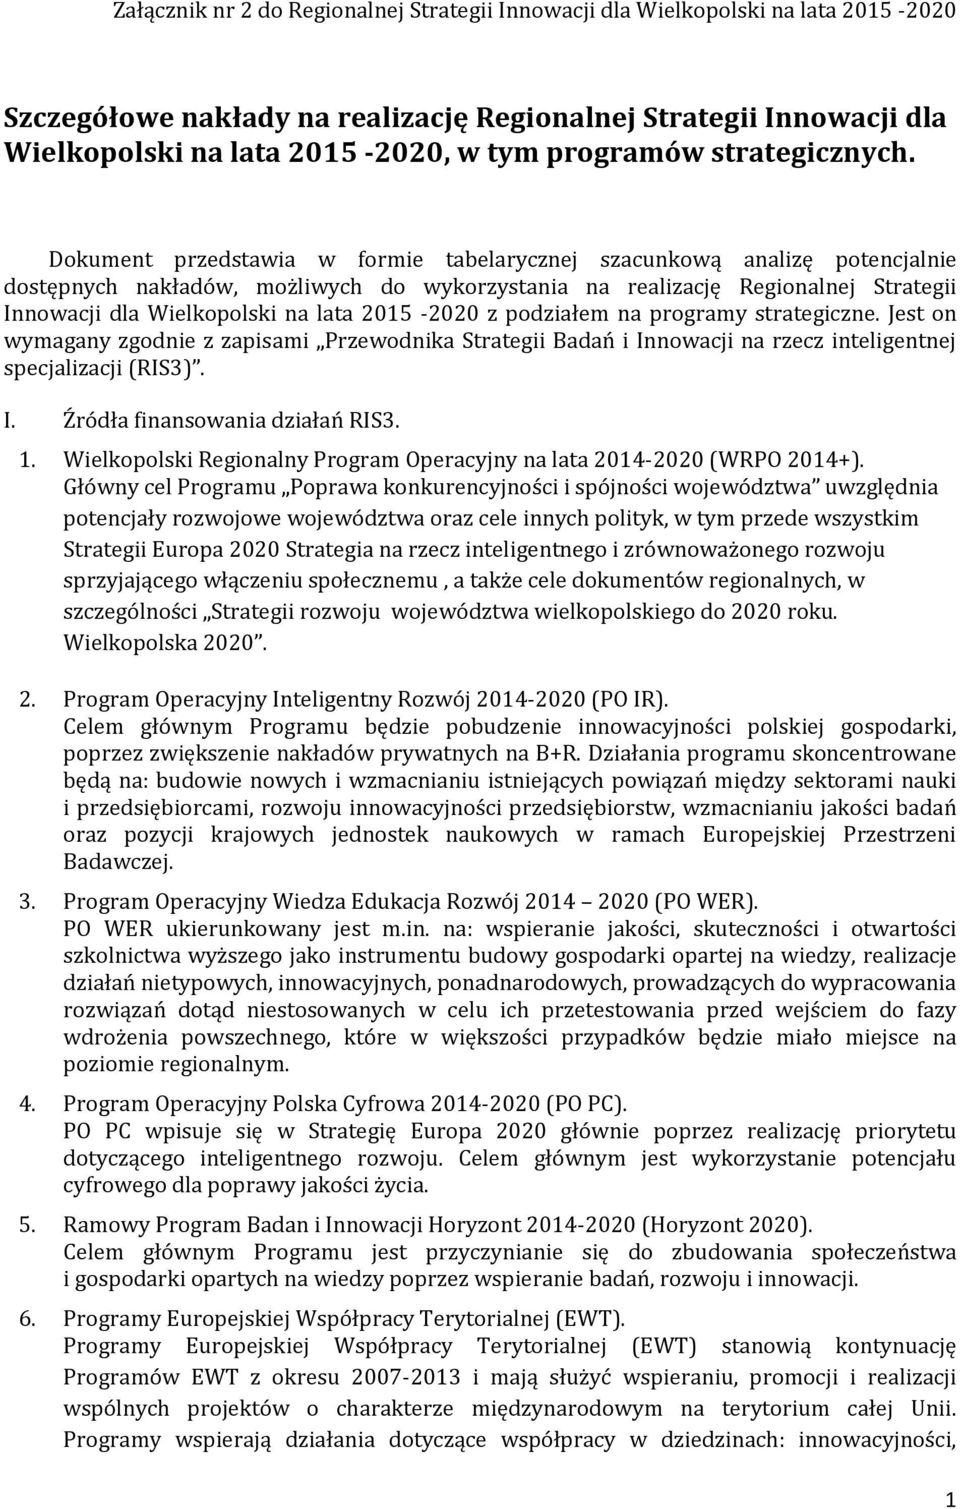 Dokument przedstawia w formie tabelarycznej szacunkową analizę potencjalnie dostępnych nakładów, możliwych do wykorzystania na realizację Regionalnej Strategii Innowacji dla Wielkopolski na lata